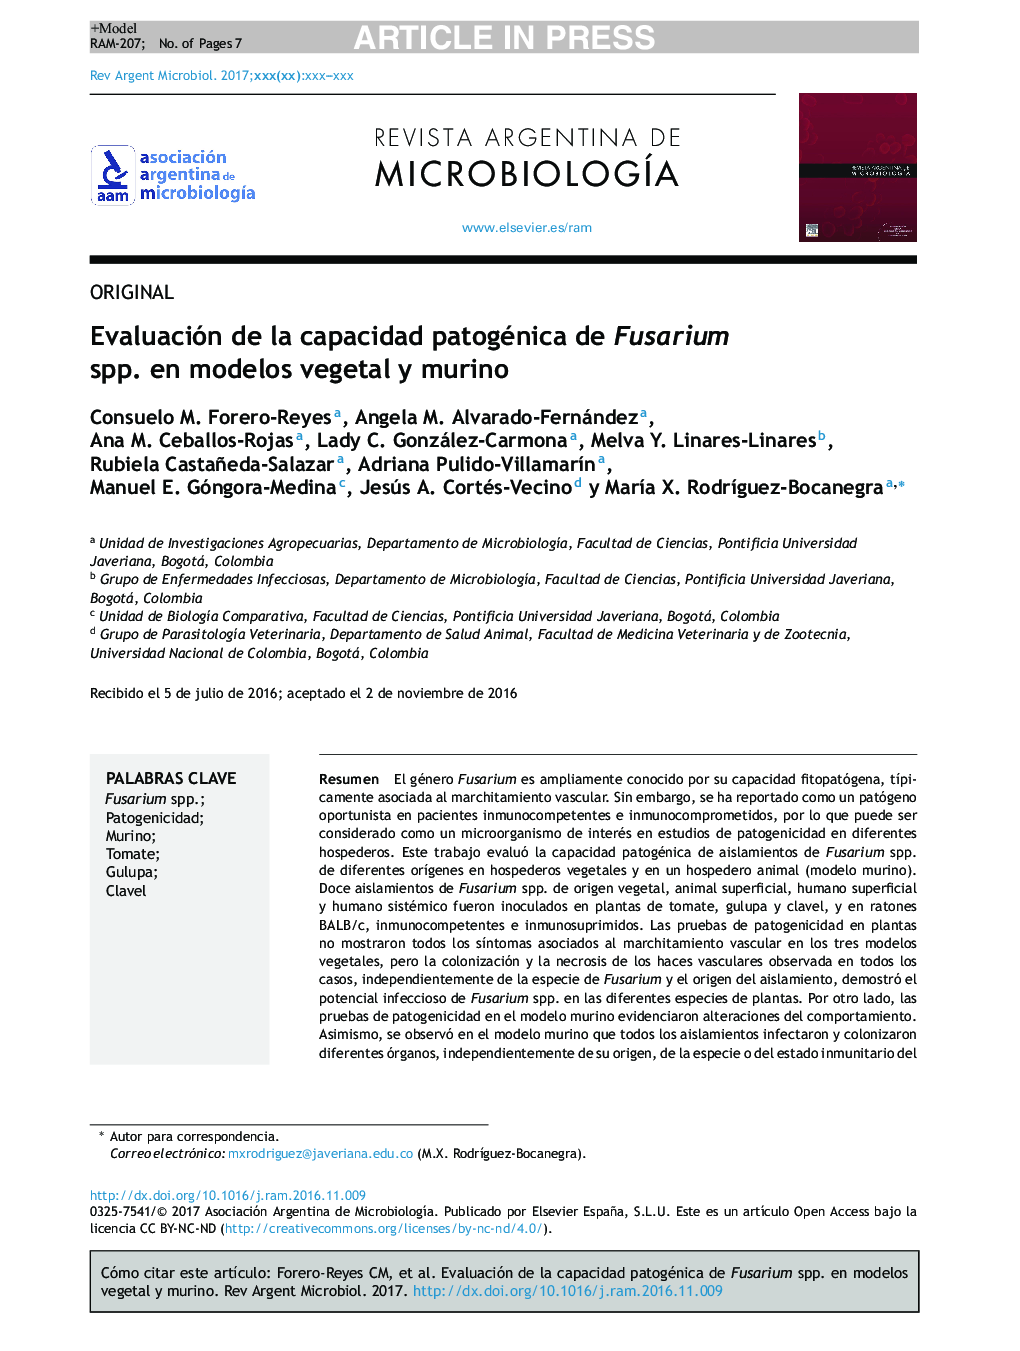 Evaluación de la capacidad patogénica de Fusarium spp. en modelos vegetal y murino